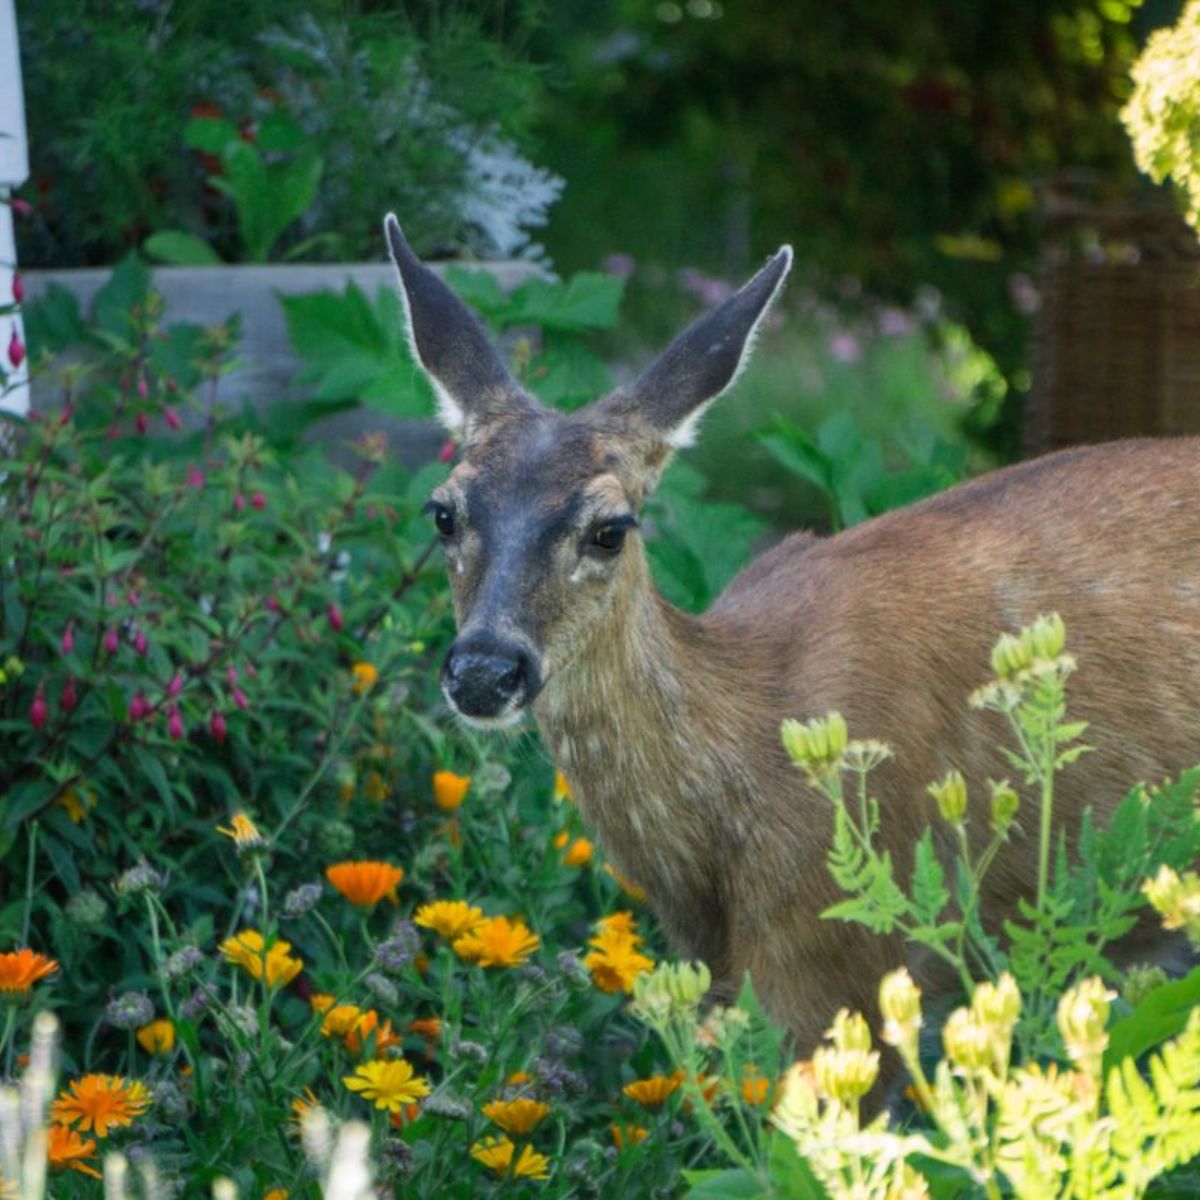 Friendly looking deer in organic garden.